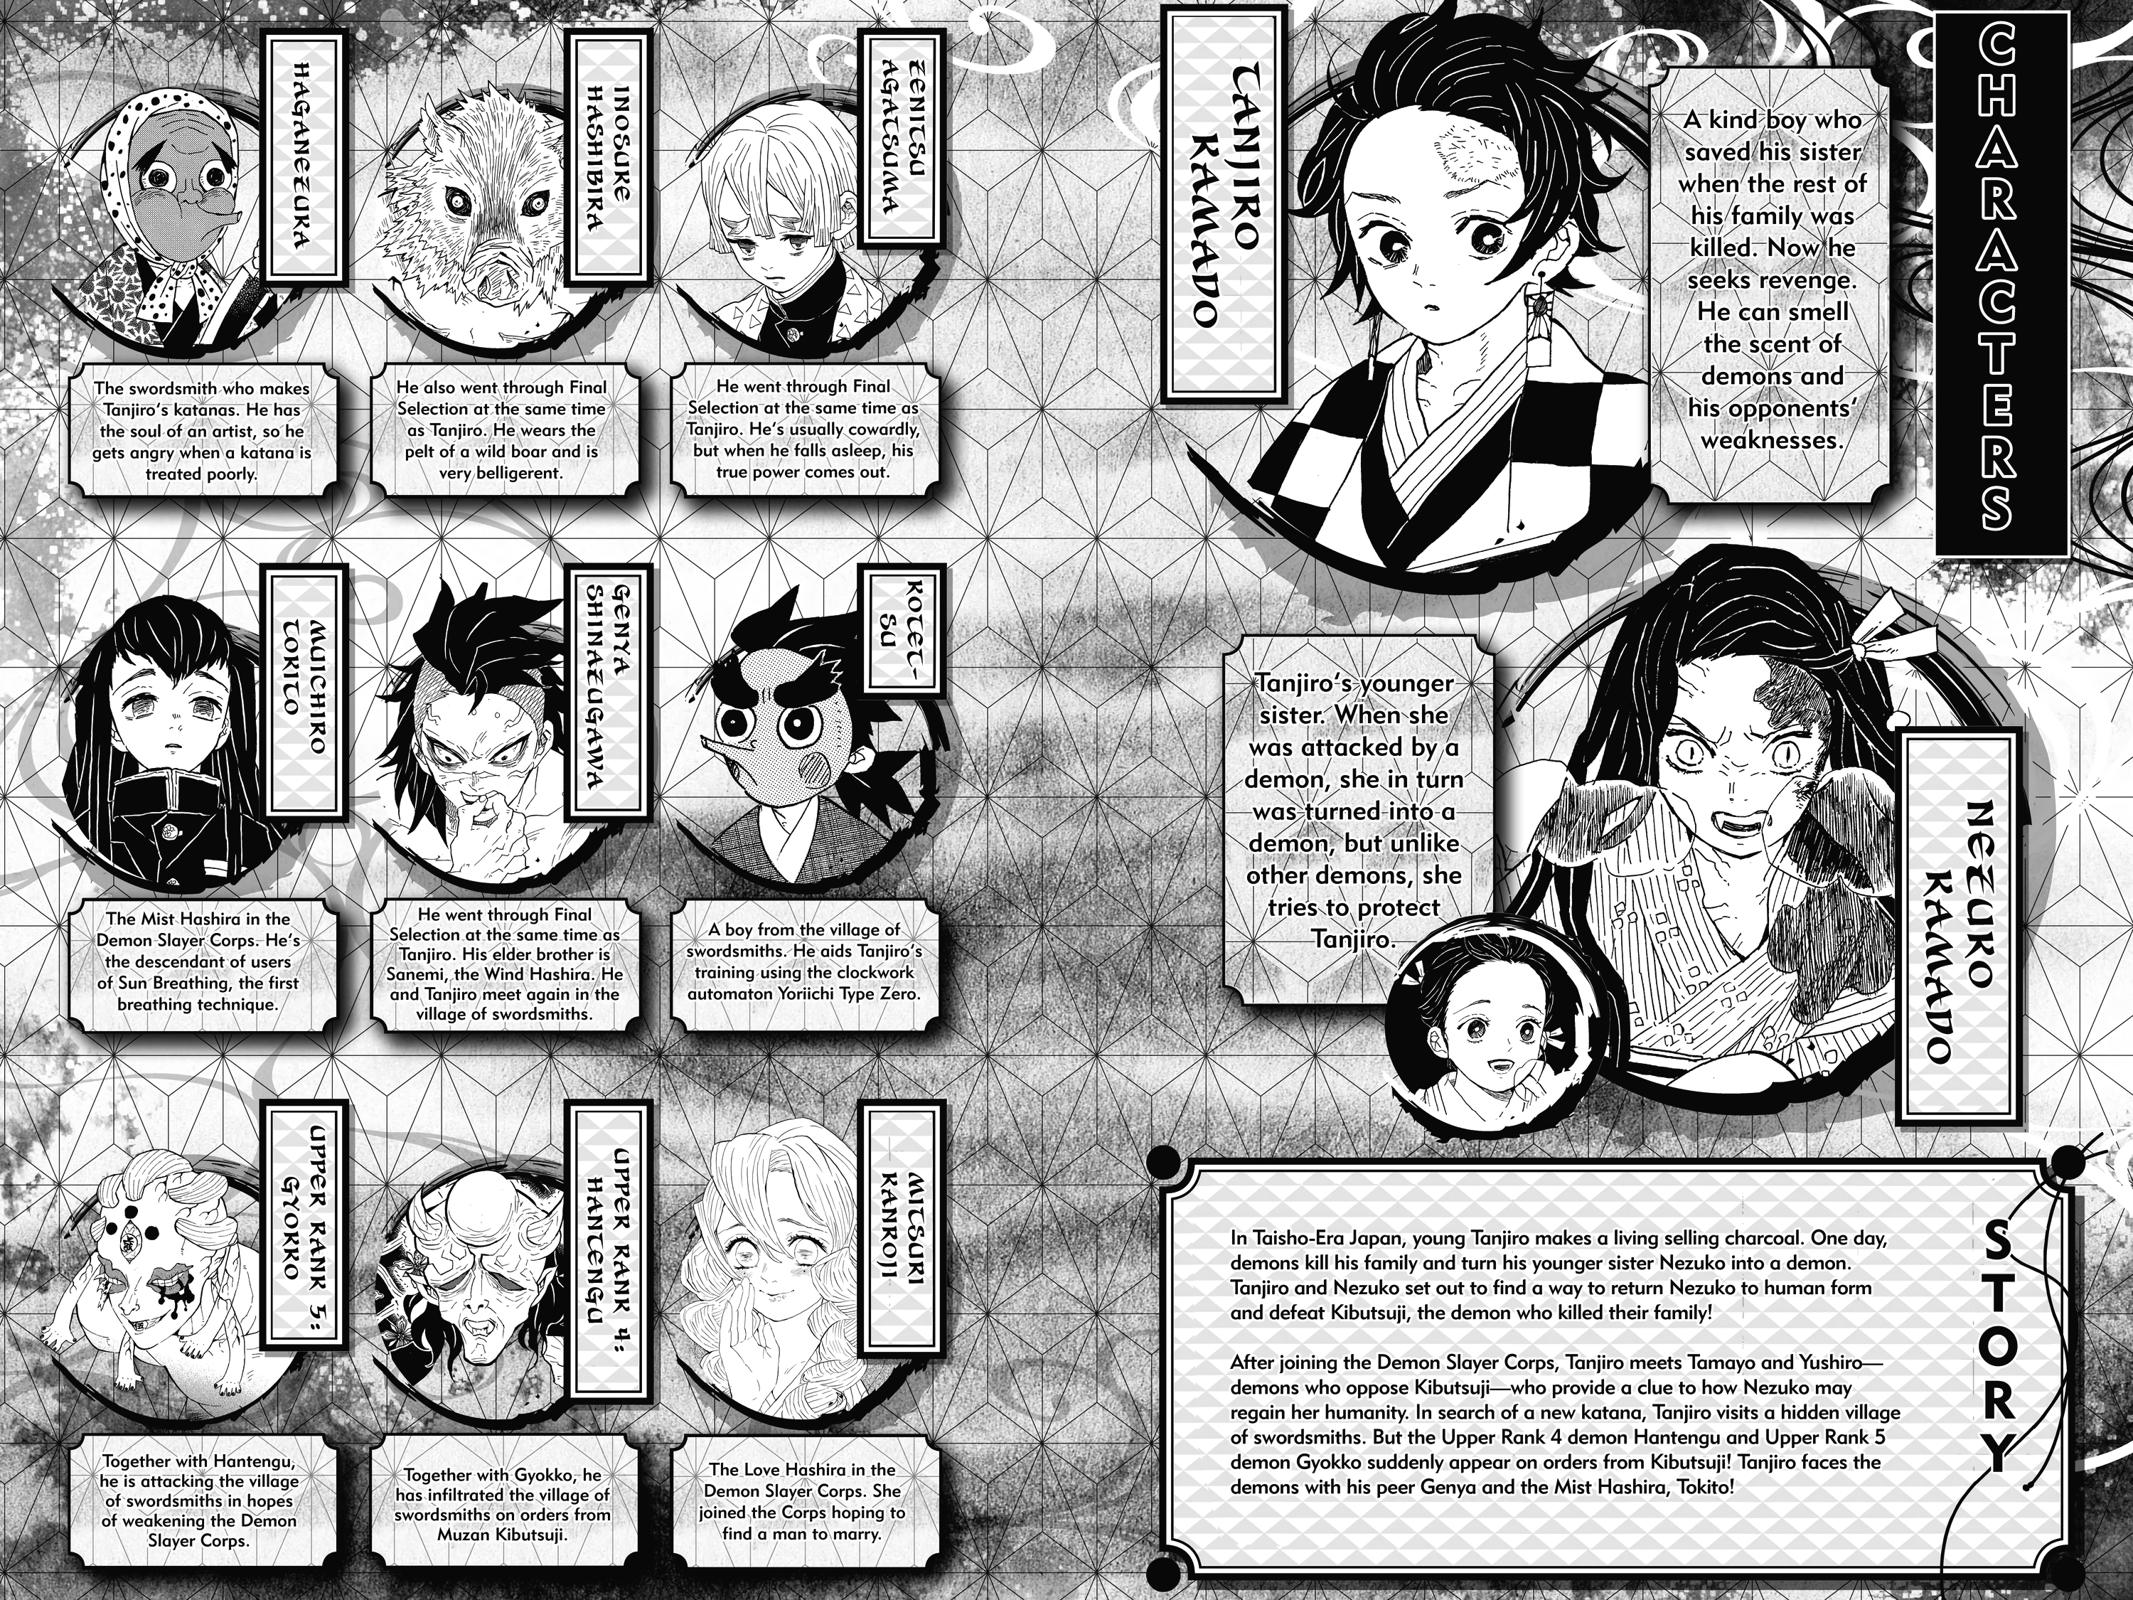 Demon Slayer Manga Manga Chapter - 107 - image 4